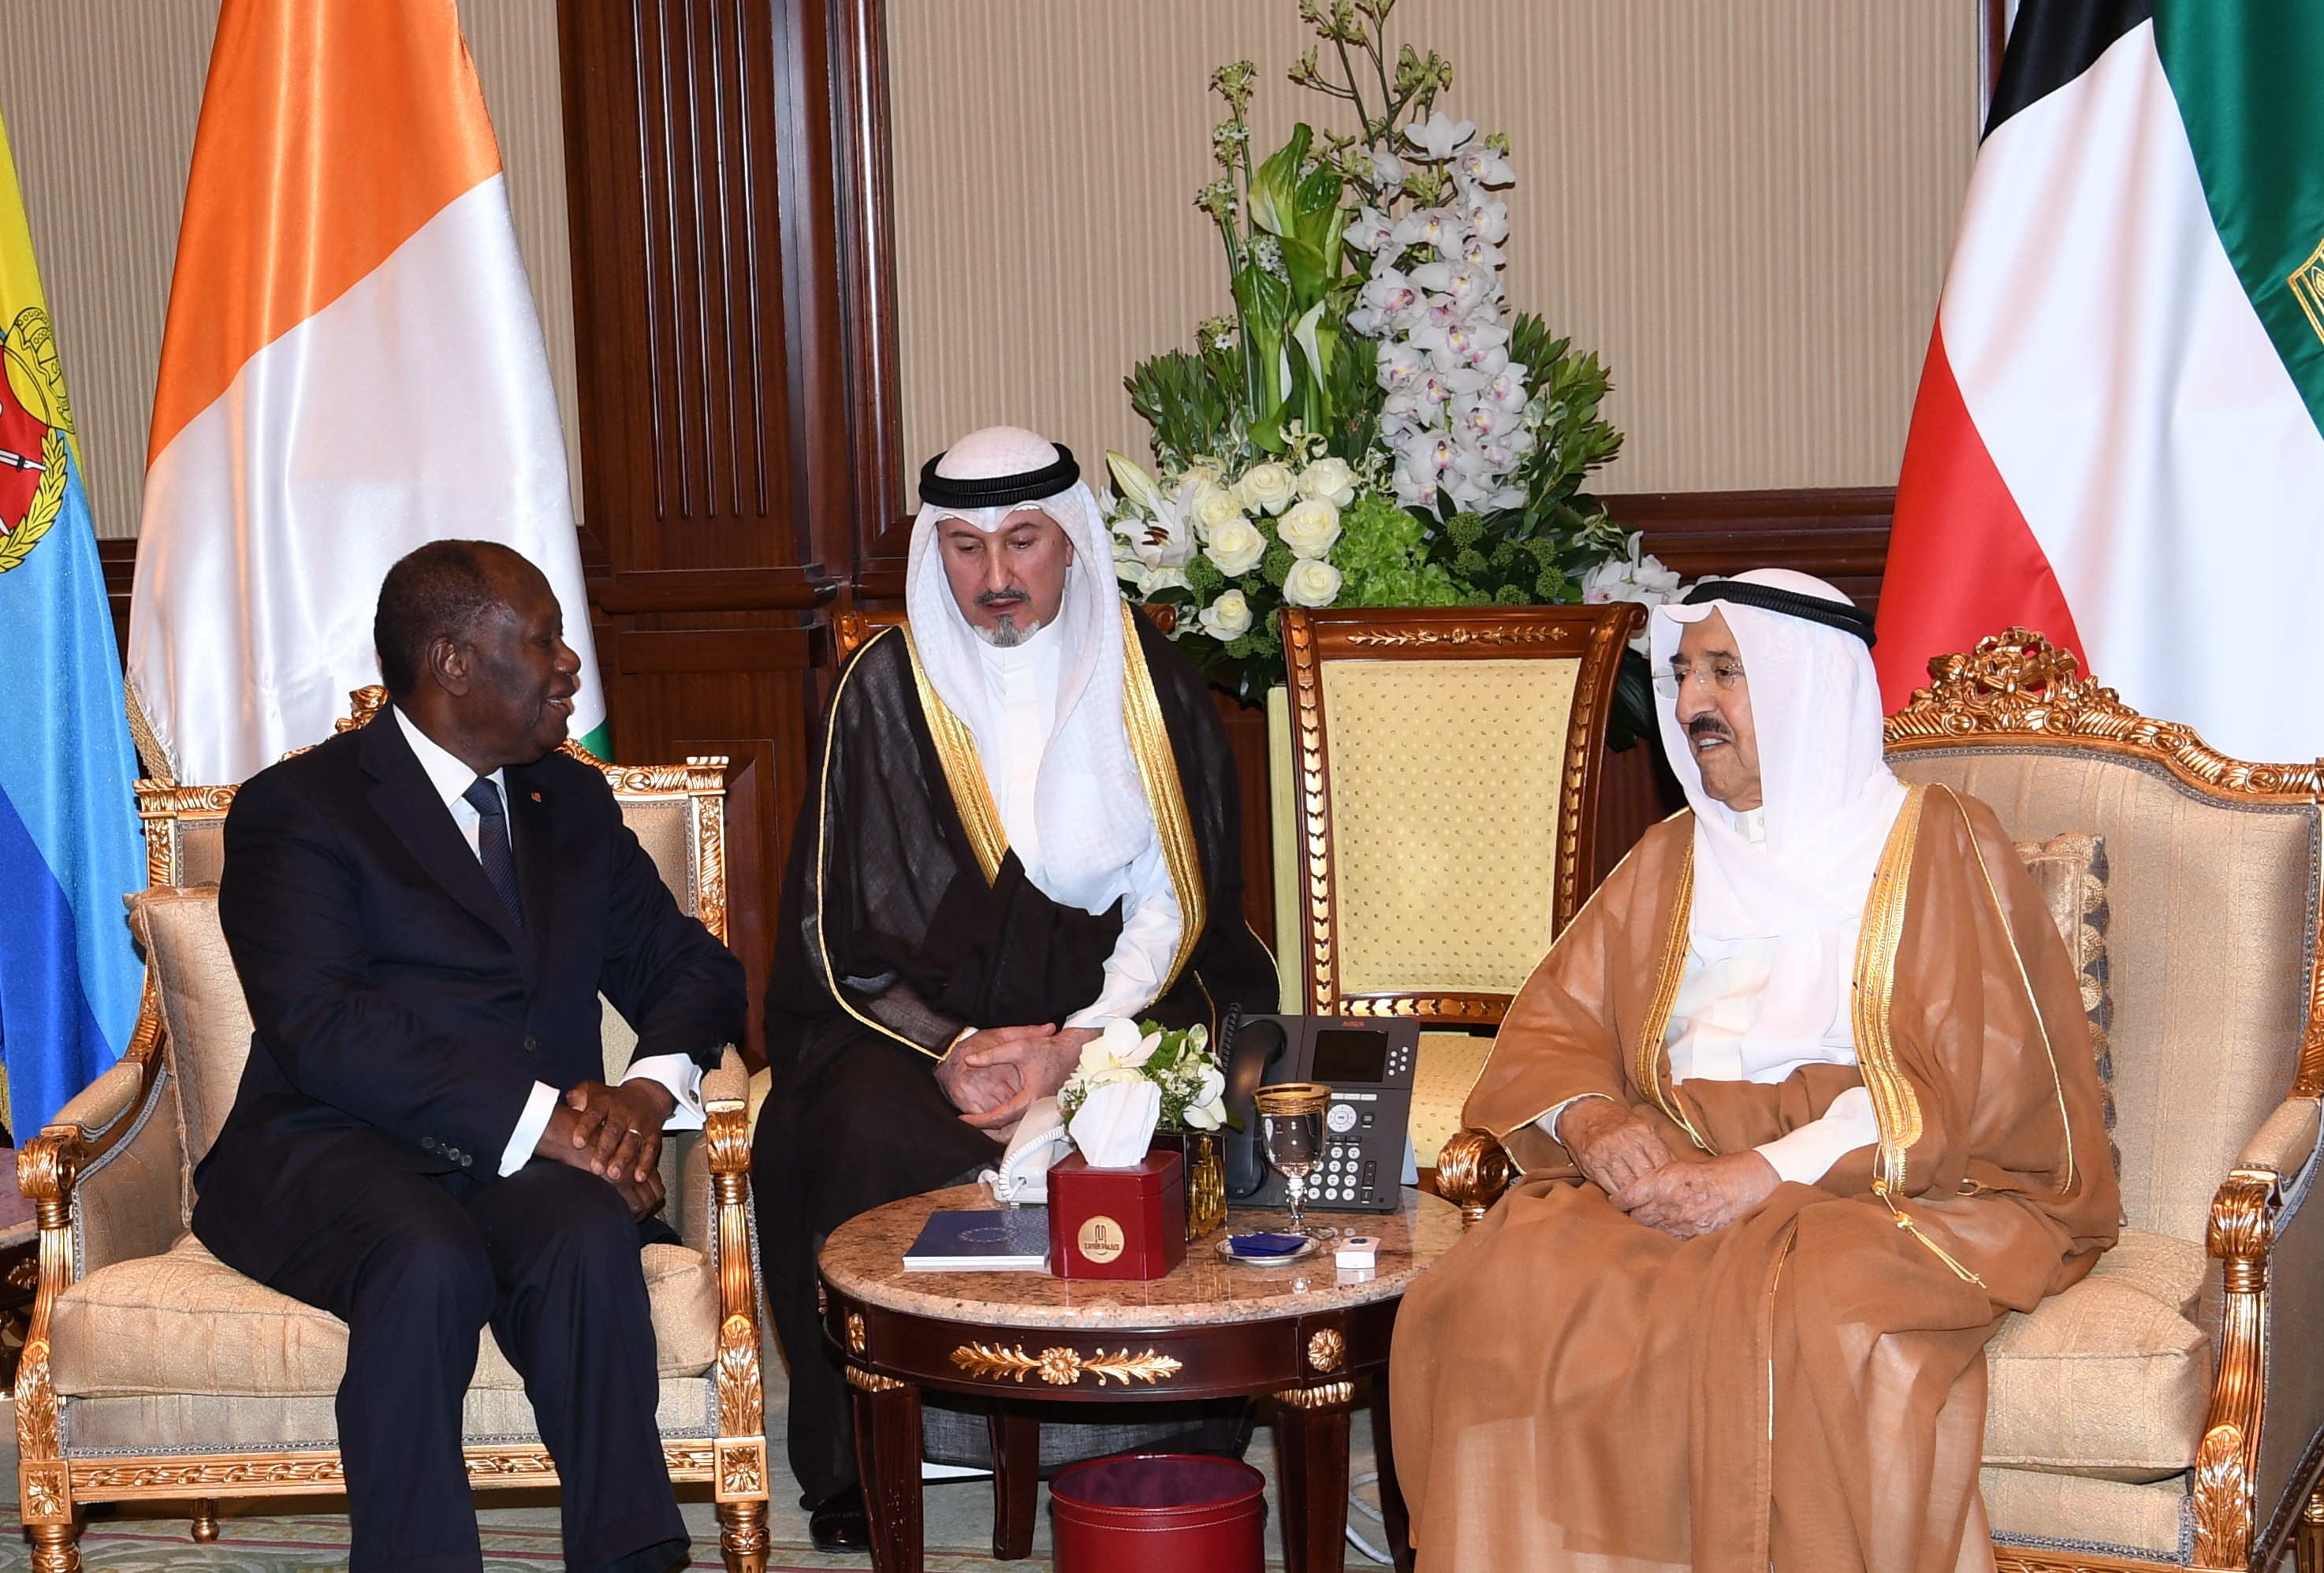 His Highness the Amir Sheikh Sabah Al-Ahmad Al-Jaber Al-Sabah receives Cote d'Ivoire's President Alassane Ouattara